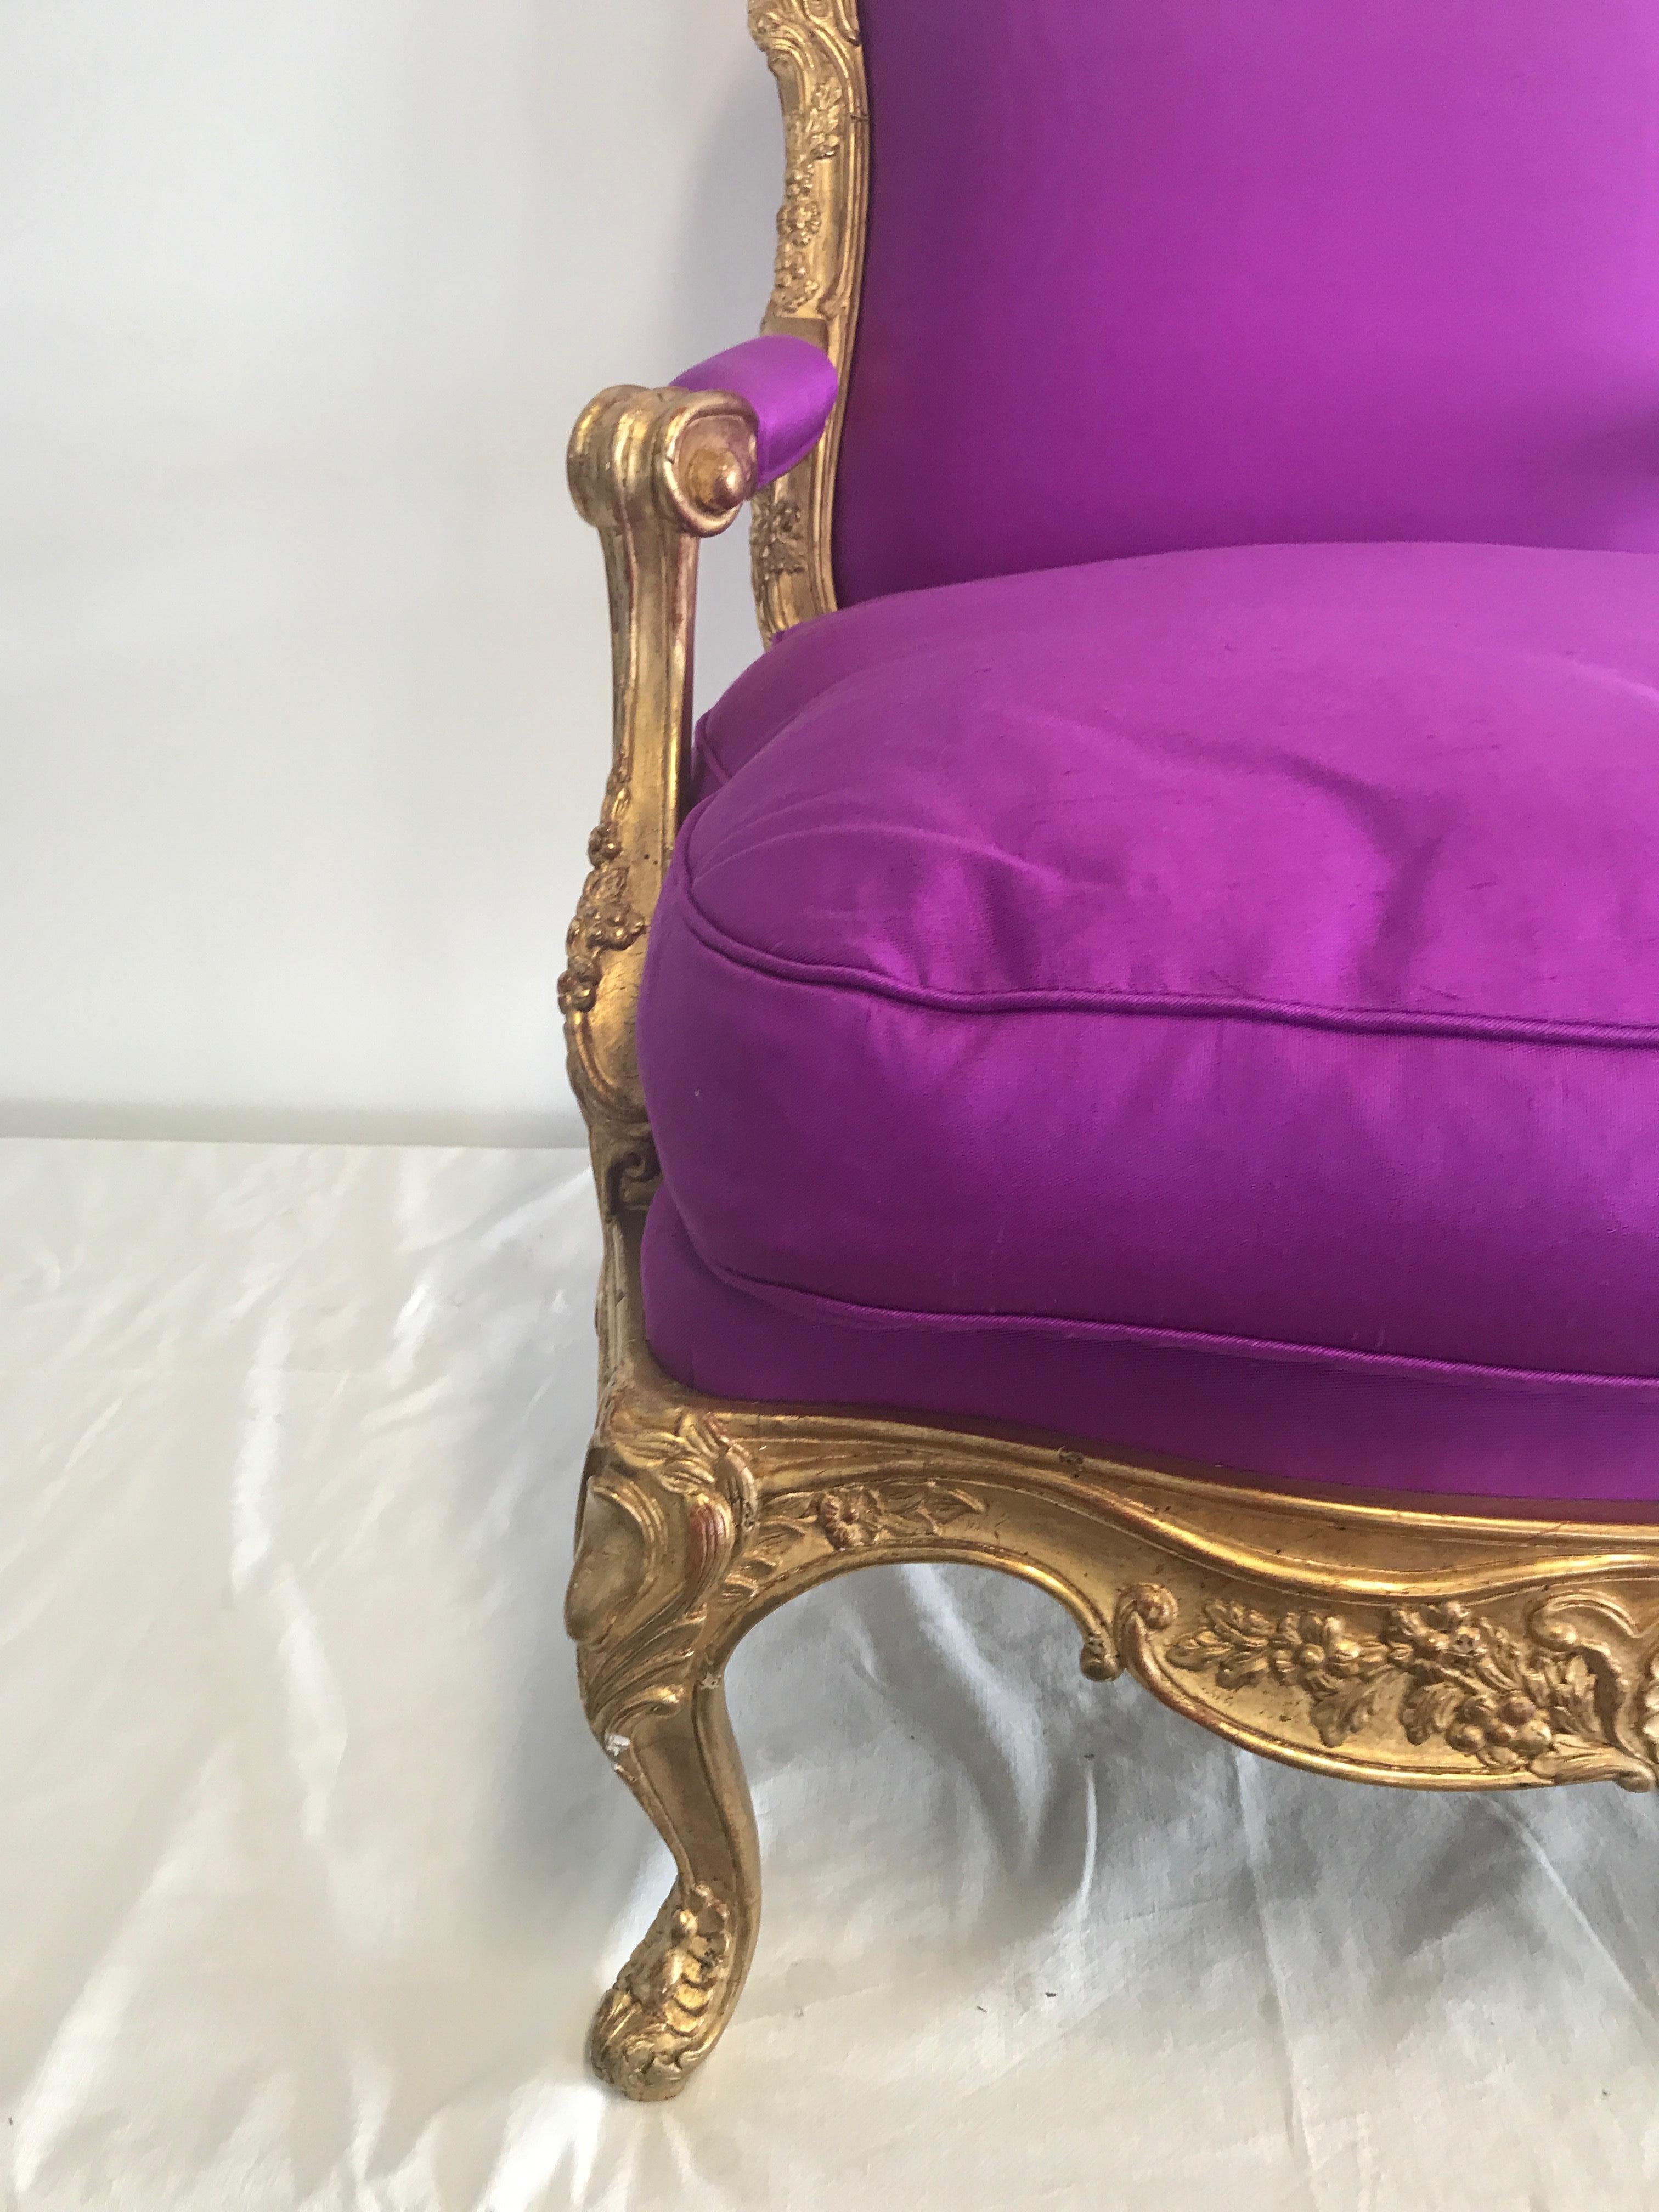 Fauteuil de style Louis XVI, tapisserie neuve en soie tissée à la main couleur orchidée, coussin d'assise non fixé, remplissage du coussin d'assise en aubes nouvelles, hauteur du dossier 102cm, hauteur de l'assise 49cm, largeur 82cm, profondeur de